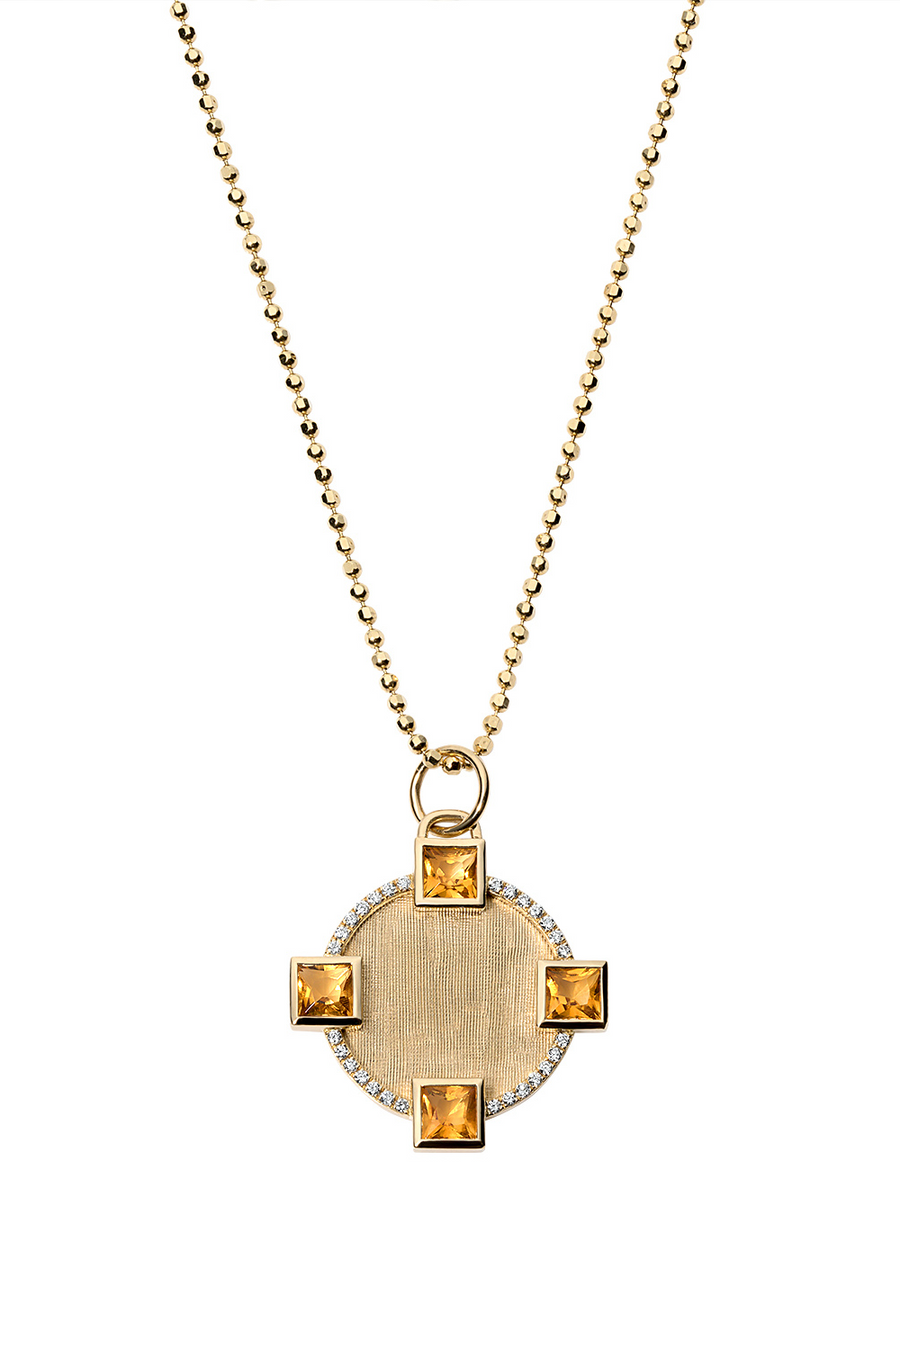 Citrine garnet round pendant in florentine 18k gold.